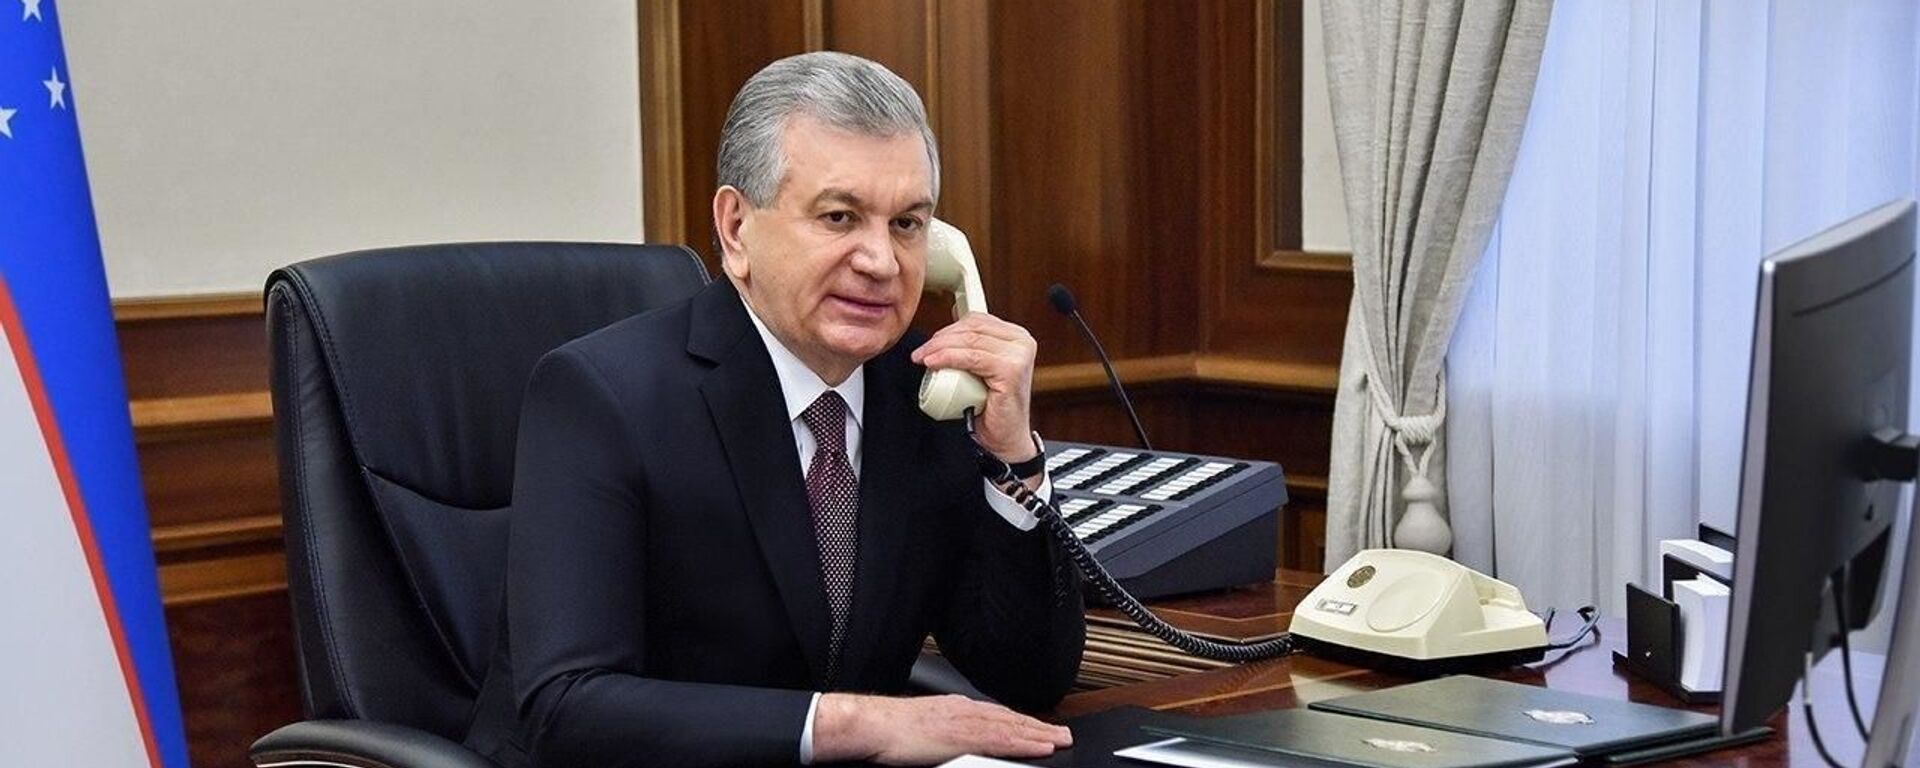 Президент Шавкат Мирзиёев разговаривает по телефону - Sputnik Ўзбекистон, 1920, 13.05.2021